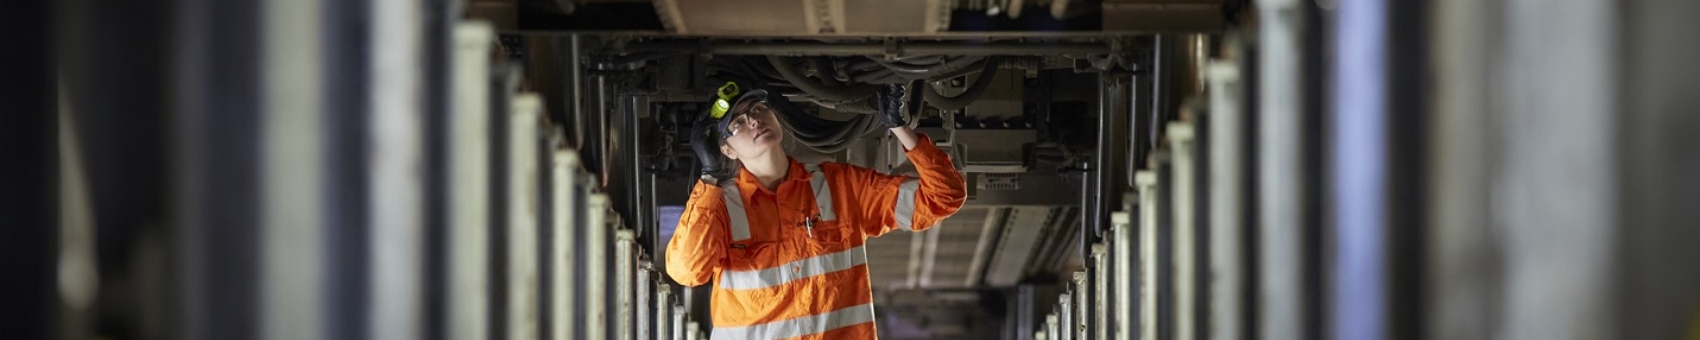 Women working in rail industry